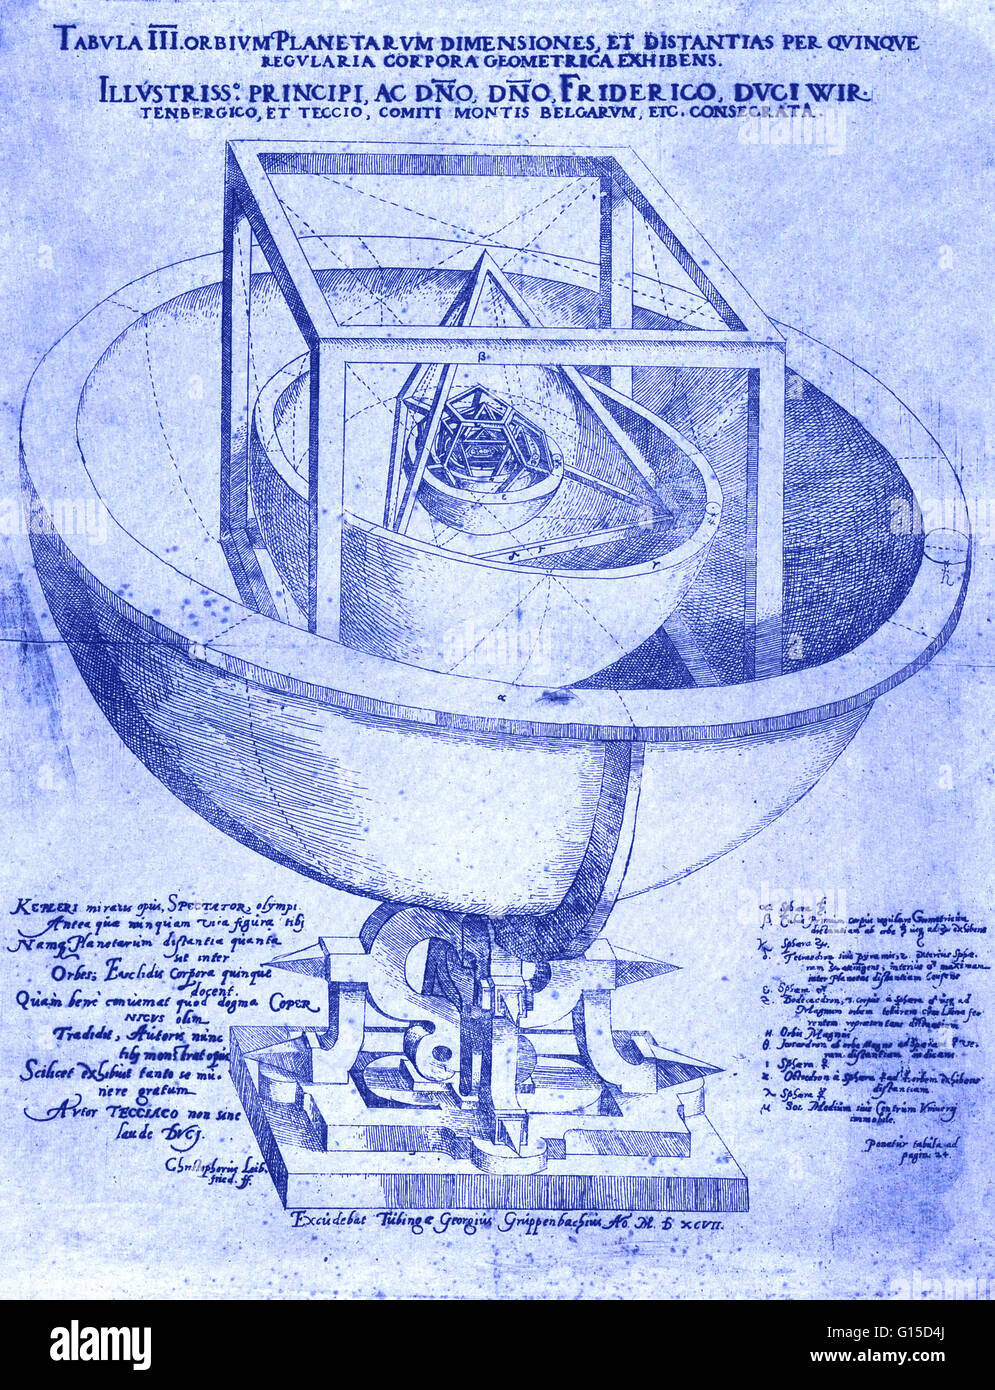 Modell der Umlaufbahn des Planeten von Johannes Kepler, 1596-97 entwickelt. Deutscher Astronom Kepler entwickelt, die drei grundlegenden Gesetze der Planetenbewegung. Diese Gesetze beruhten auf detaillierte Beobachtungen der Planeten von Tycho Brahe und selbst gemacht. Keple Stockfoto